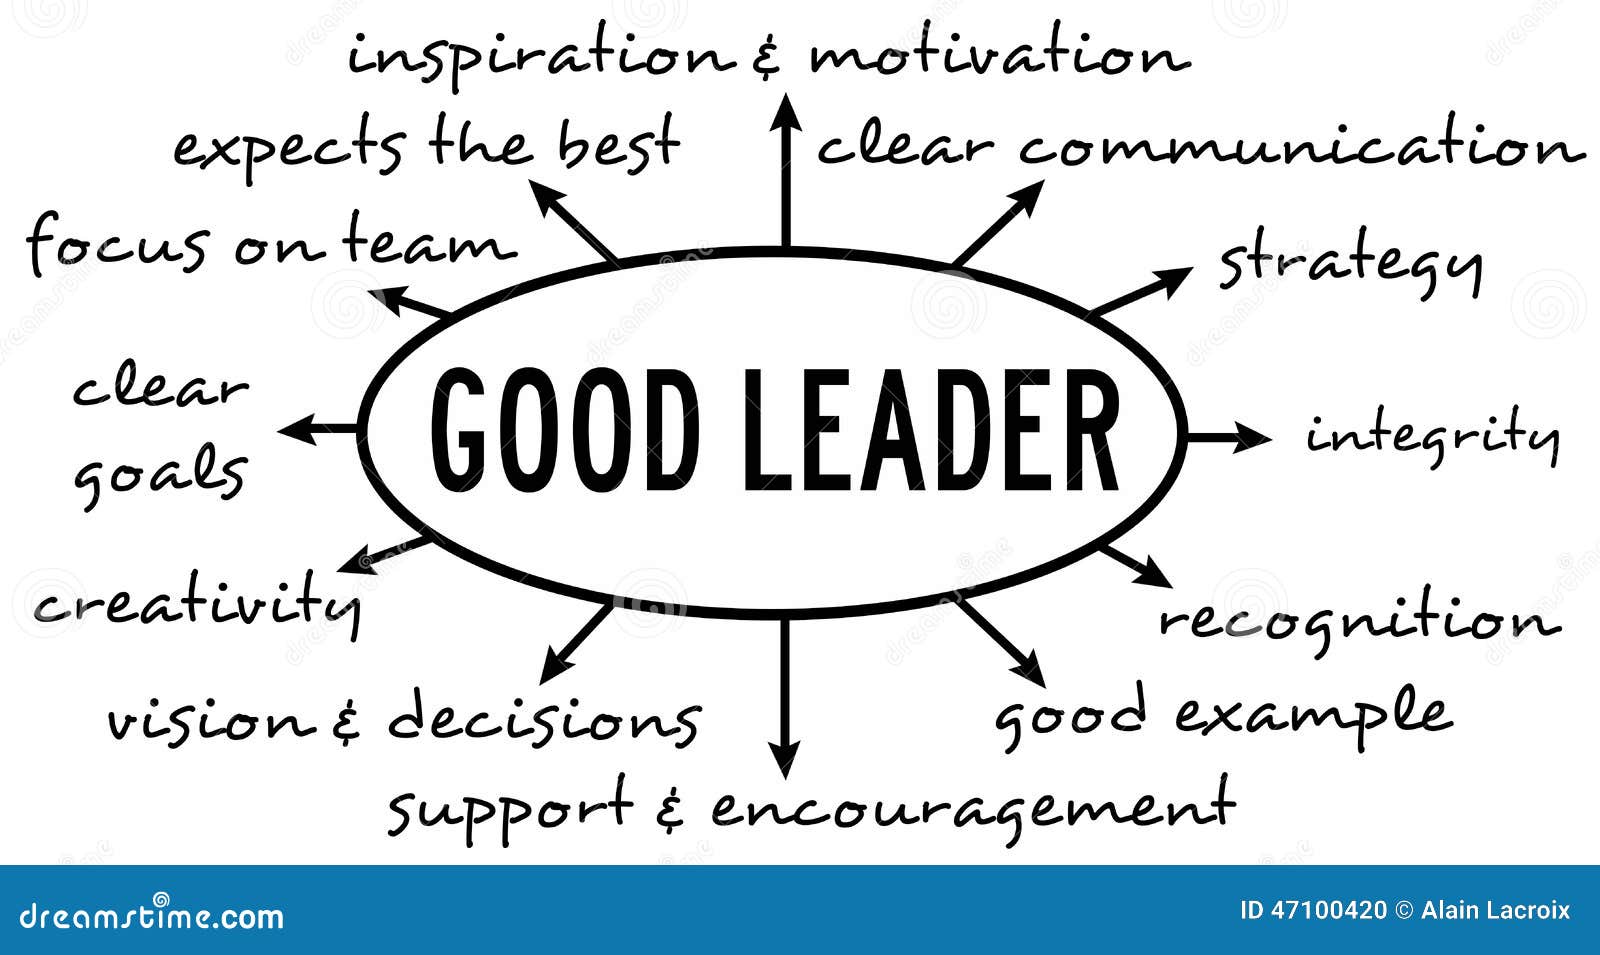 Leadership Essay: Characteristics Of A Good Leader